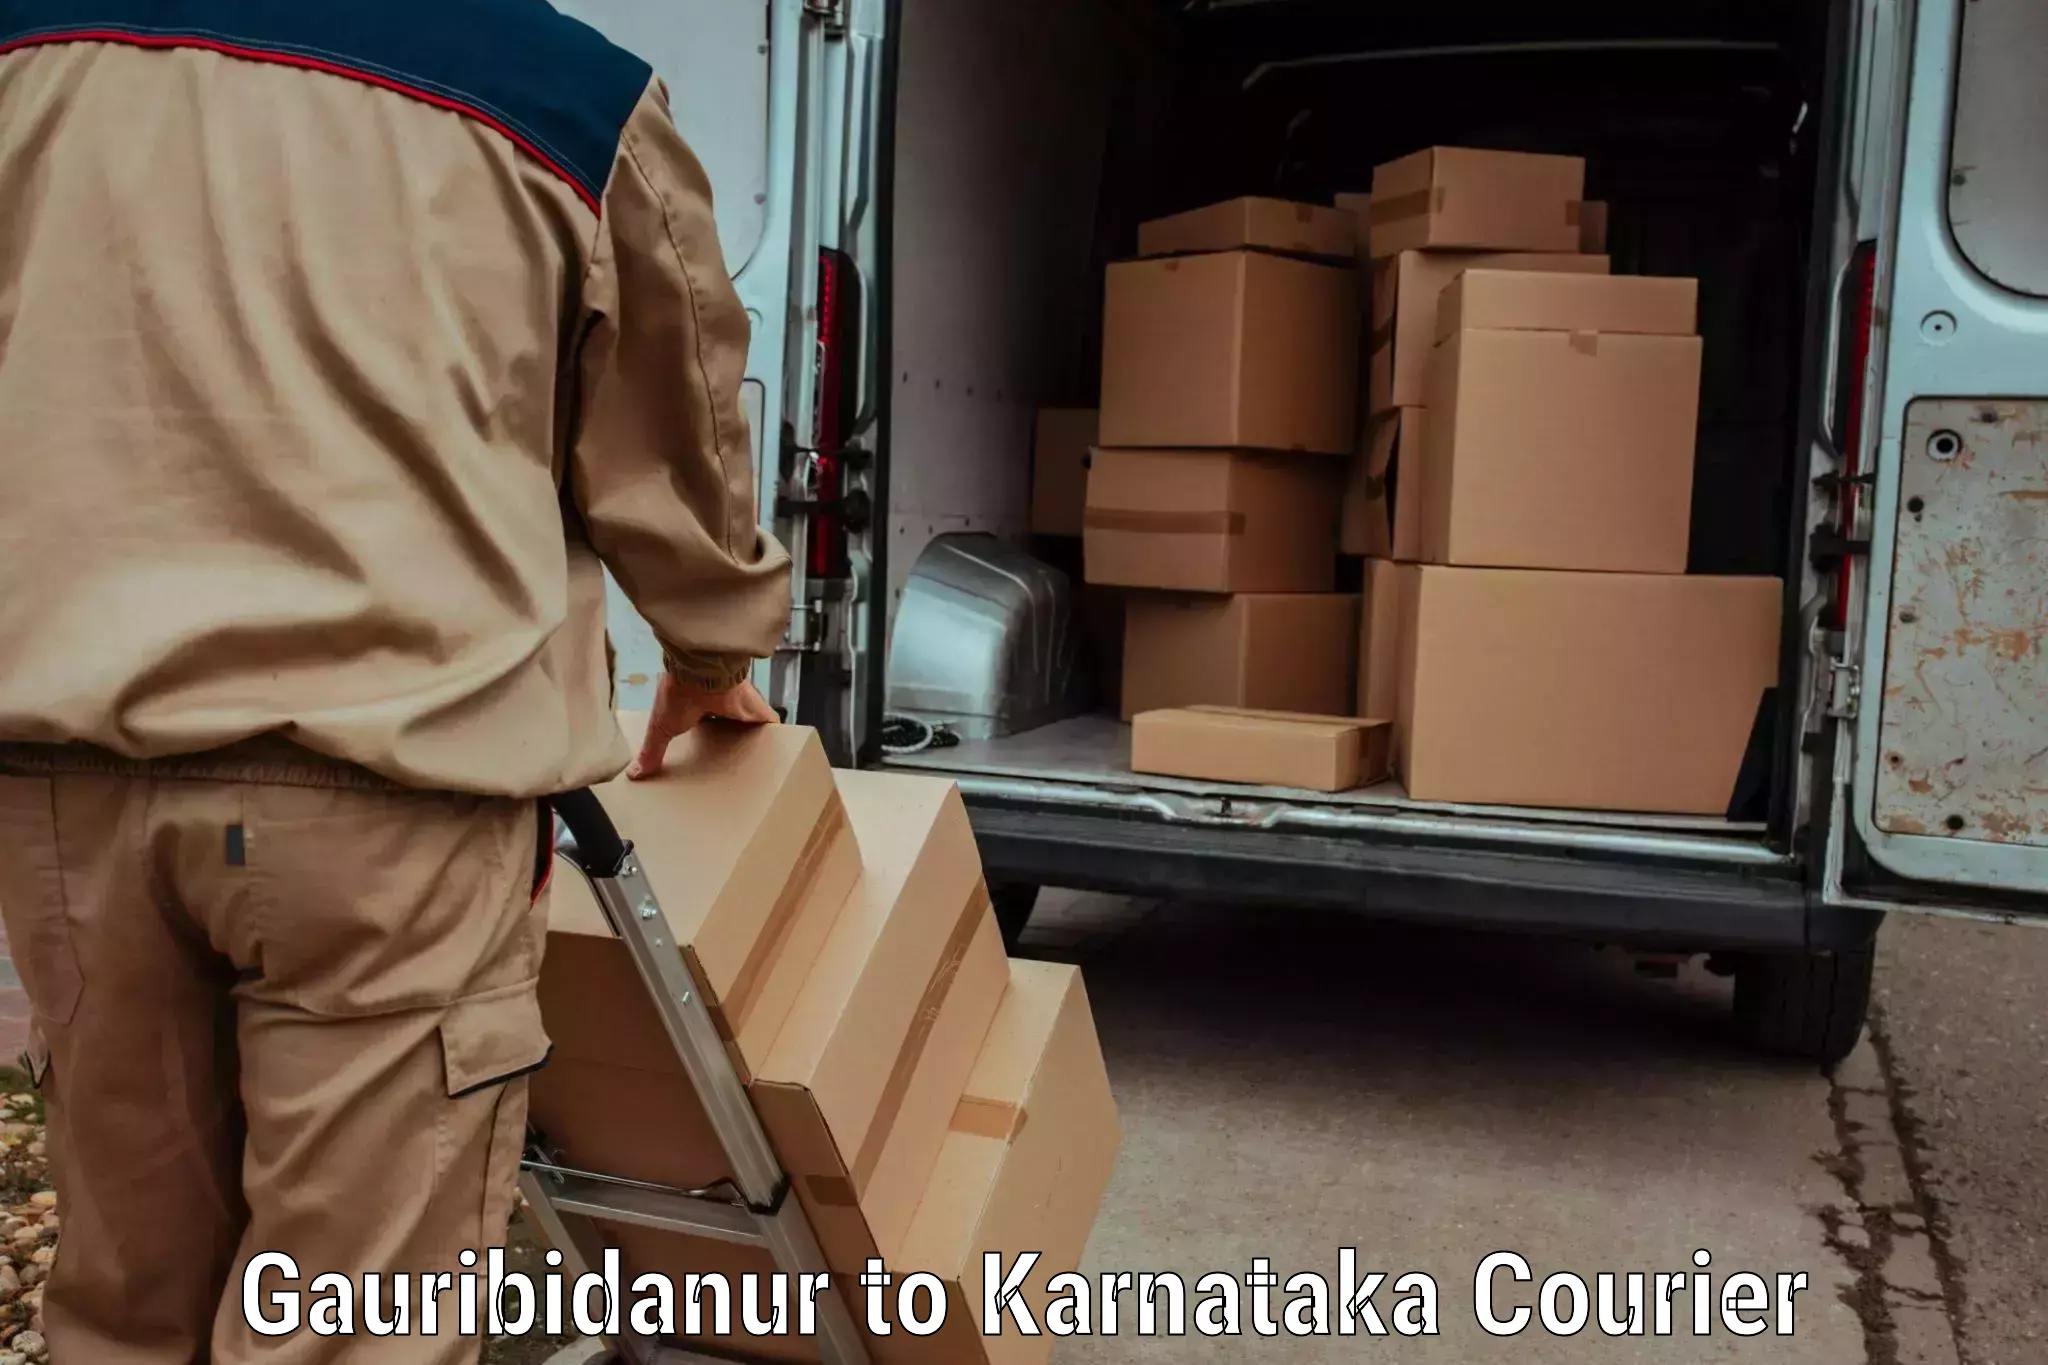 Courier service comparison Gauribidanur to Sandur